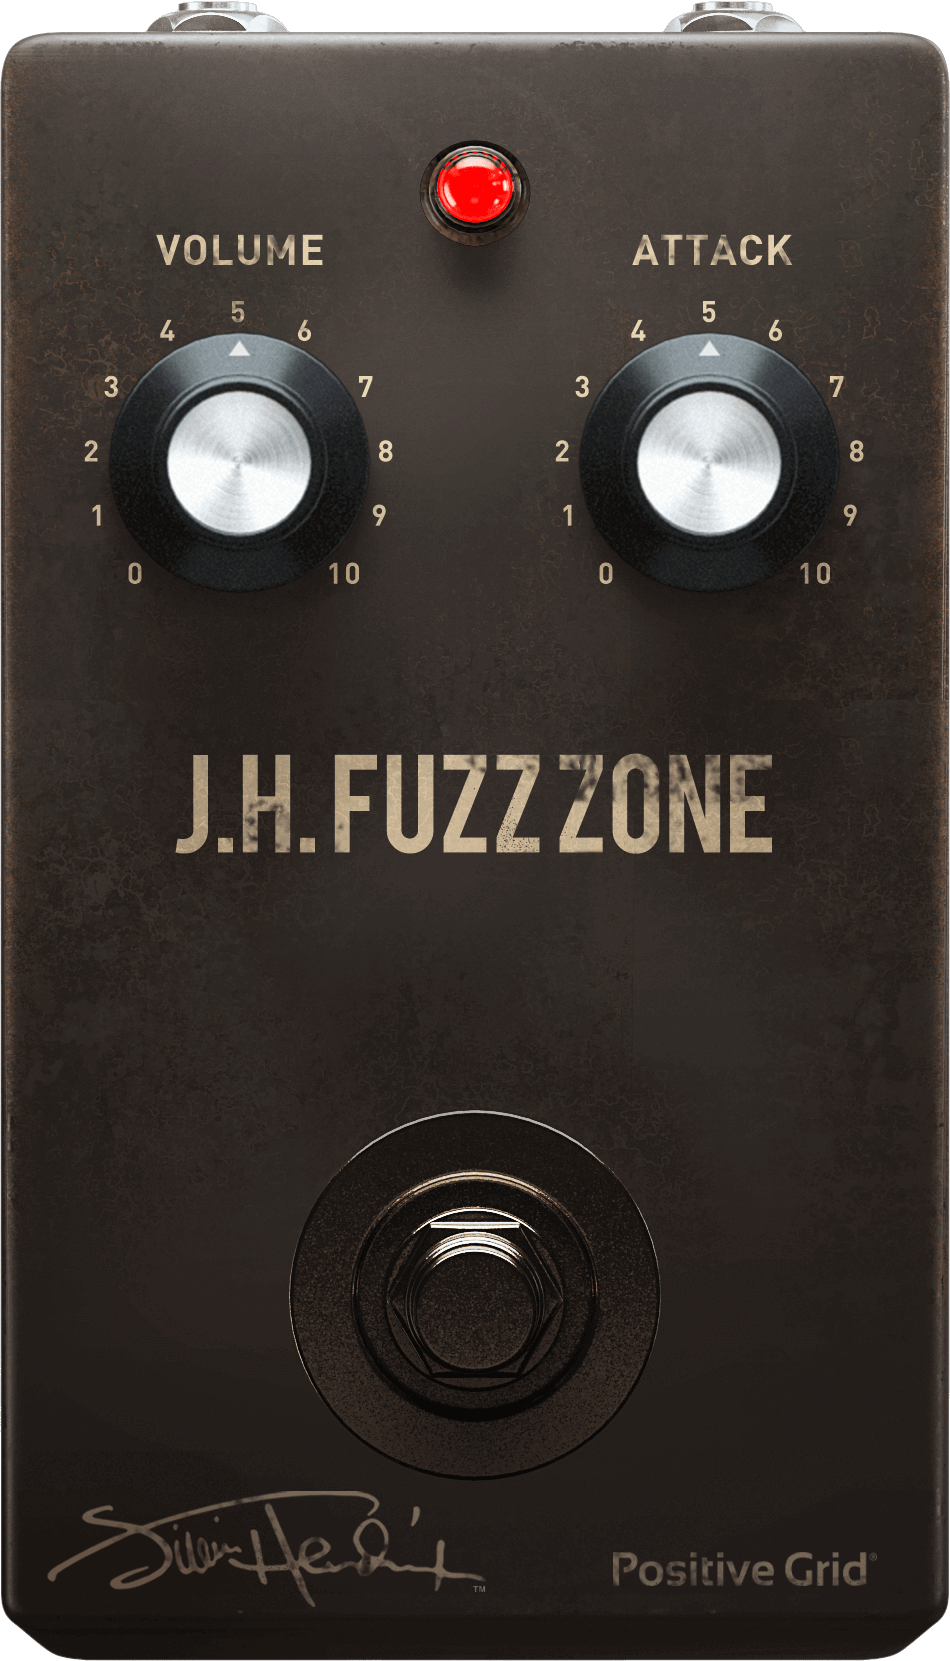 J.H. Fuzz Zone, inspired by Maestro FZ-1 Fuzz-Tone